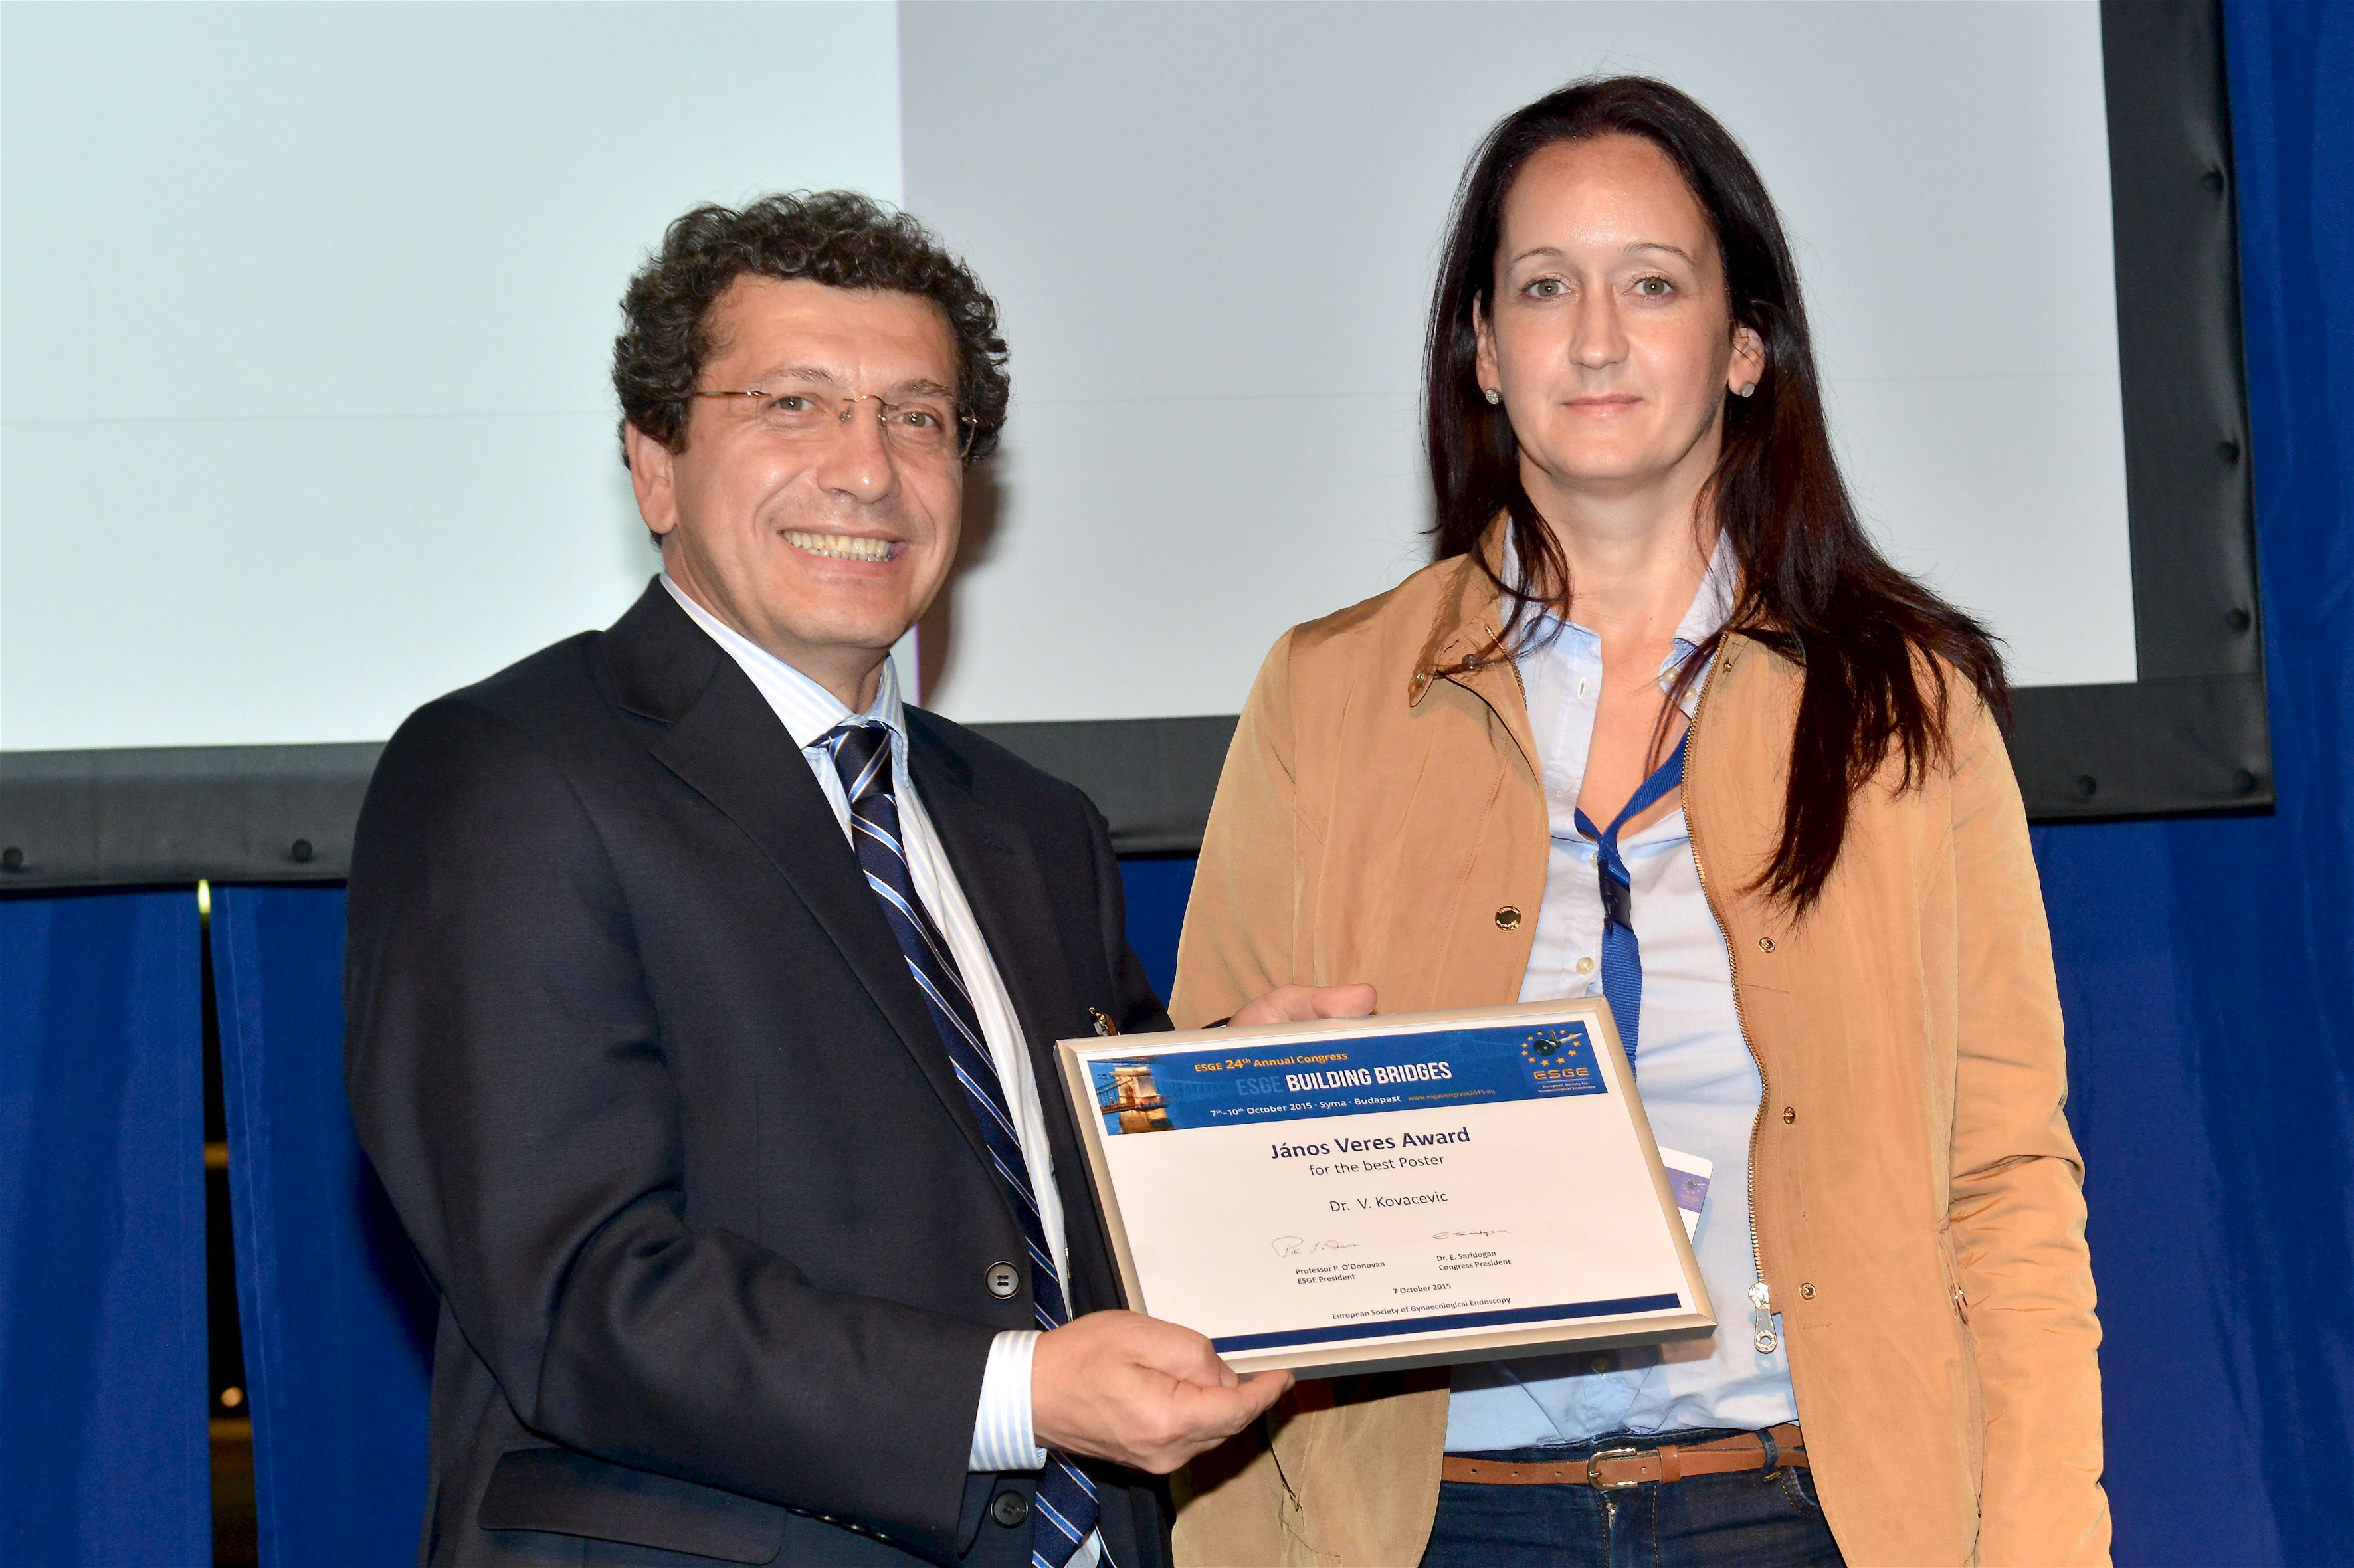 Budapest award ceremony / ESGE congress 2015